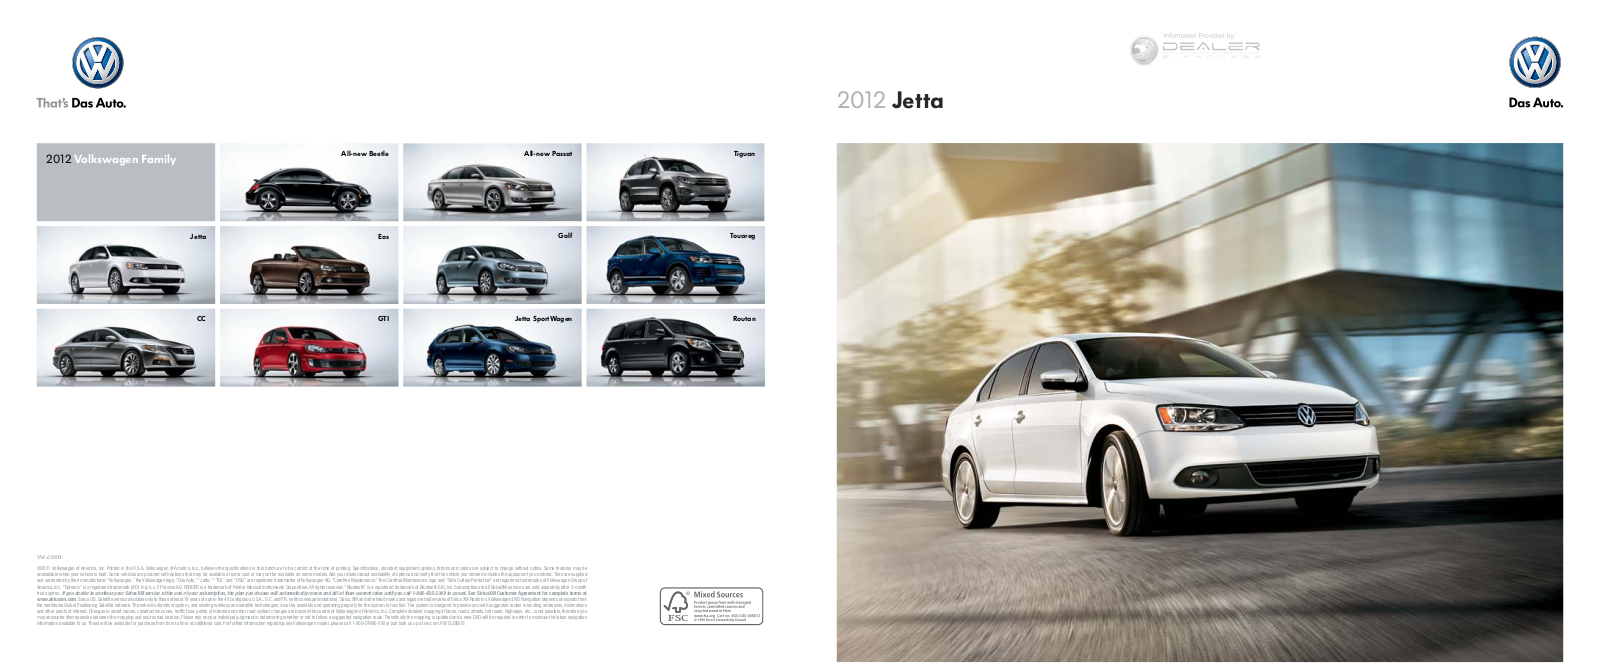 Volkswagen Jetta 2012 Owner's Manual